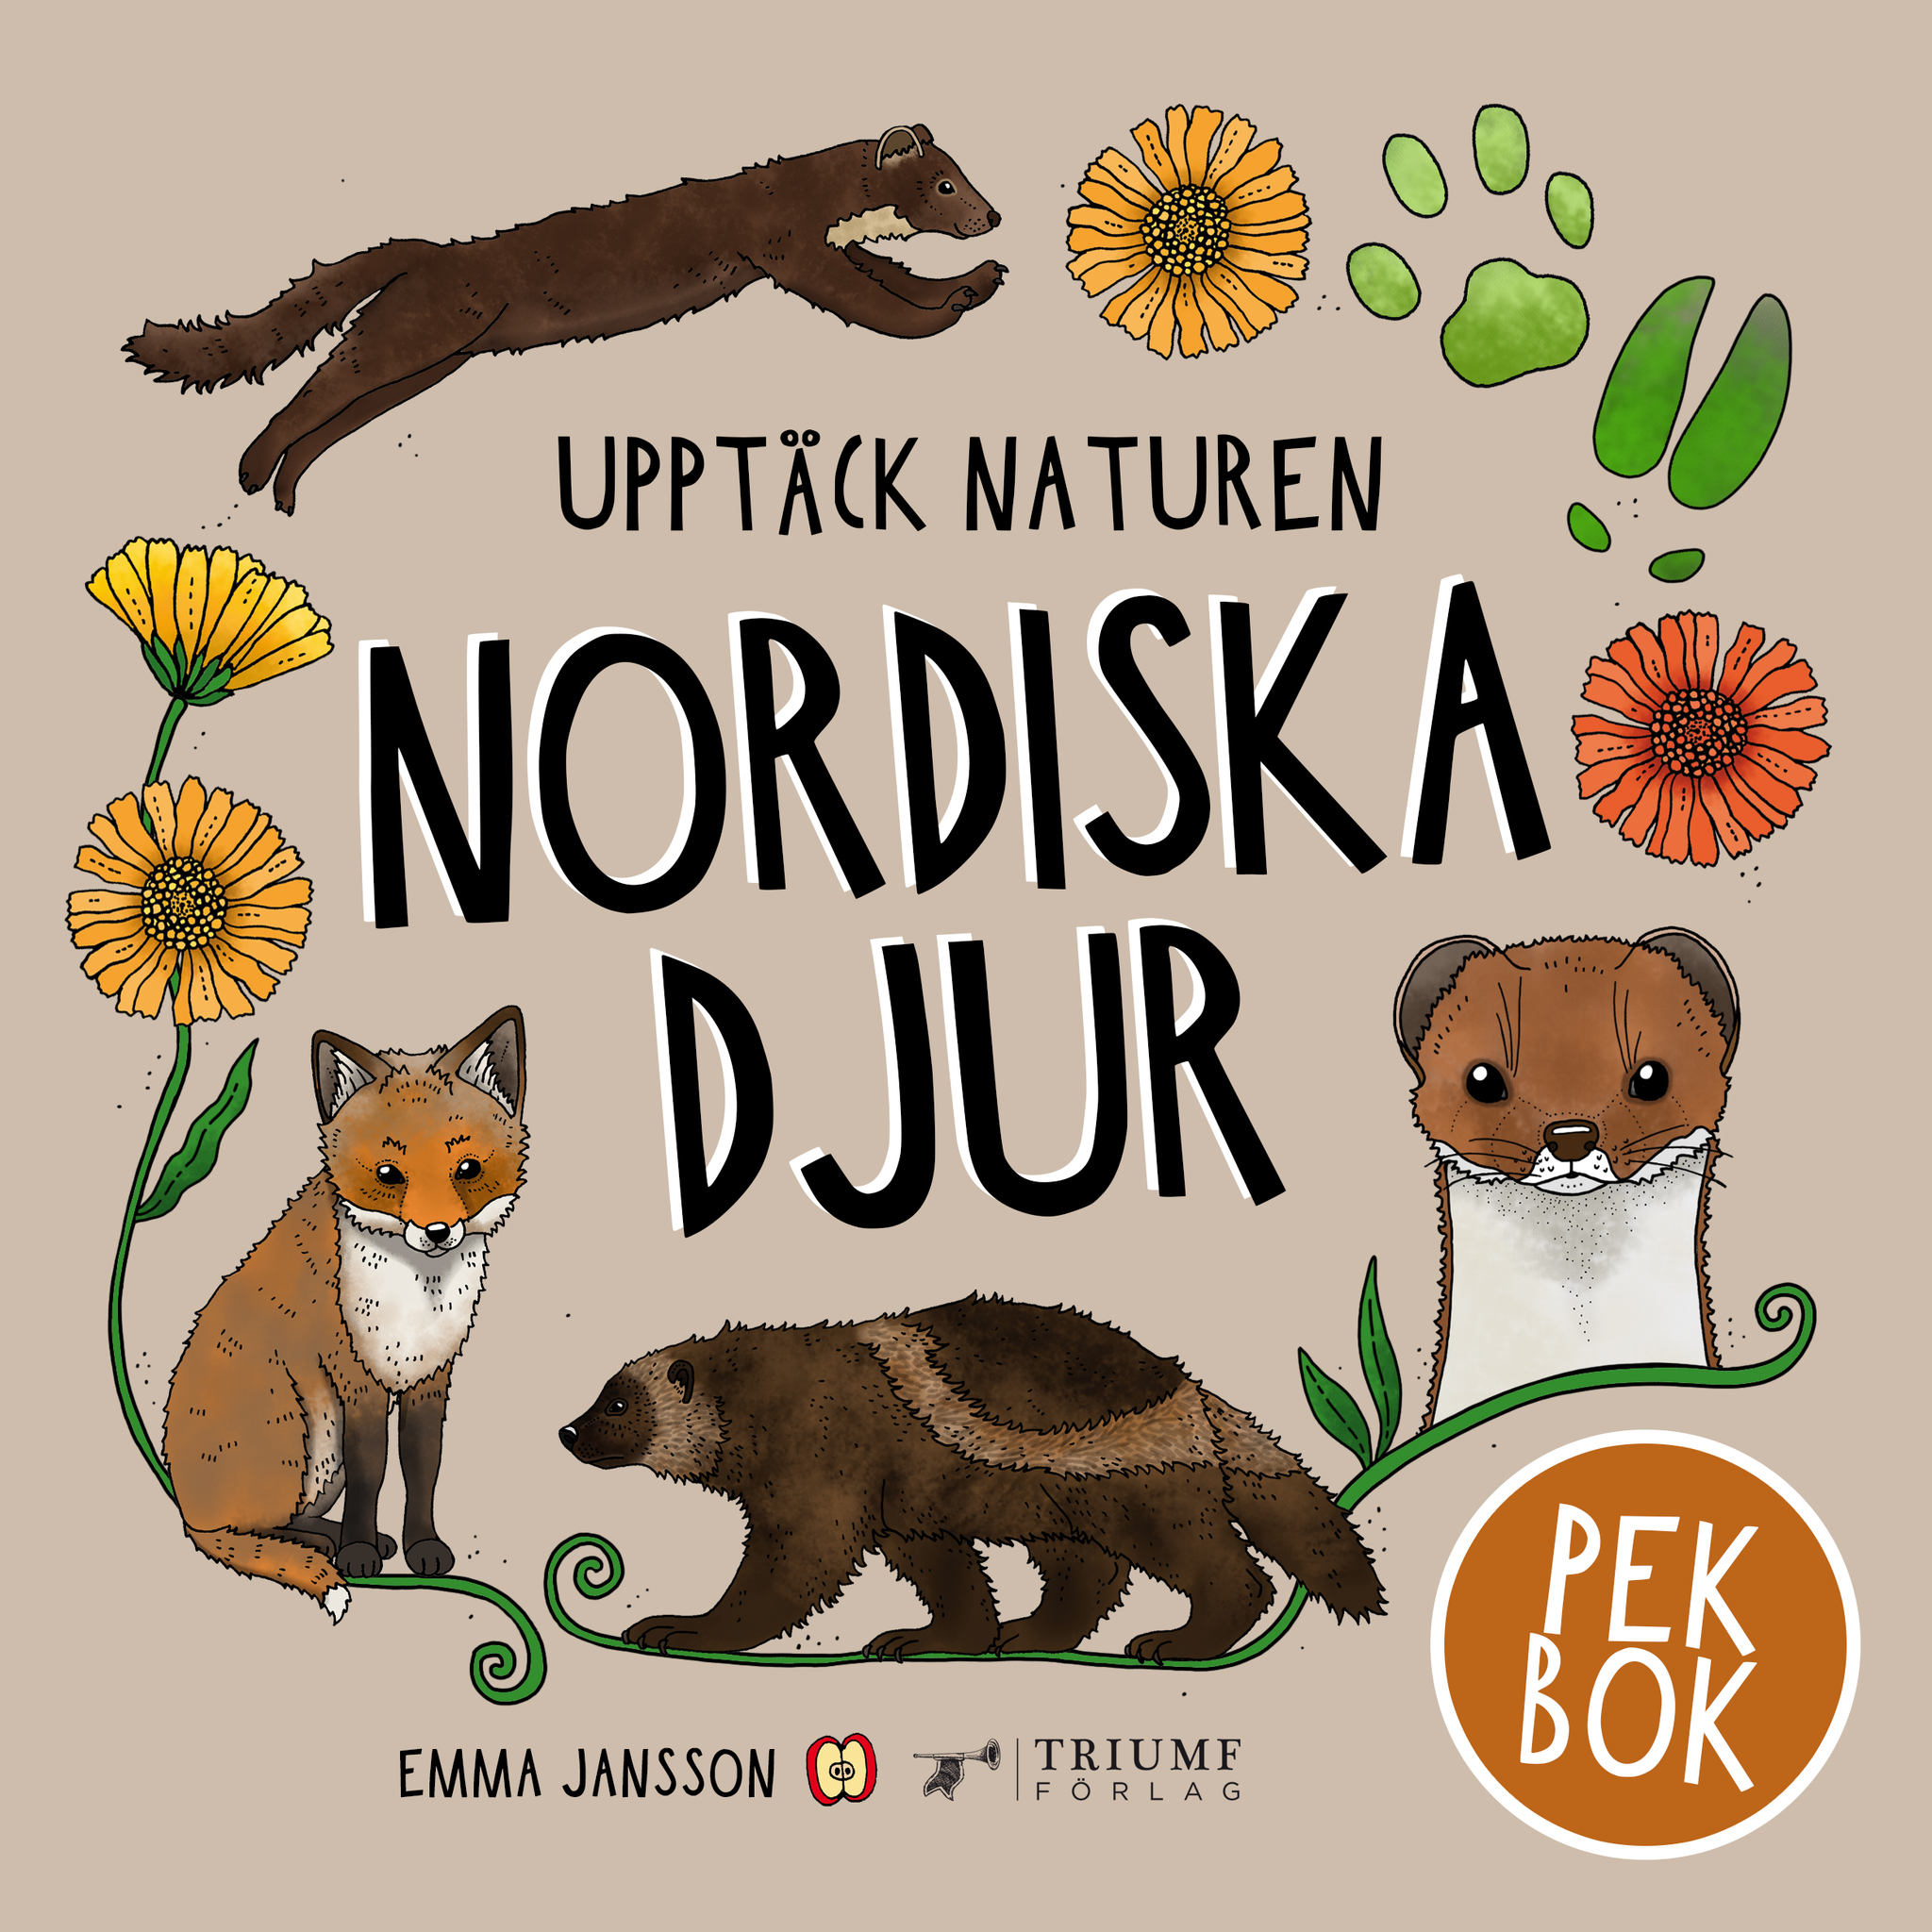 "Upptäck naturen - nordiska djur" av Emma Jansson